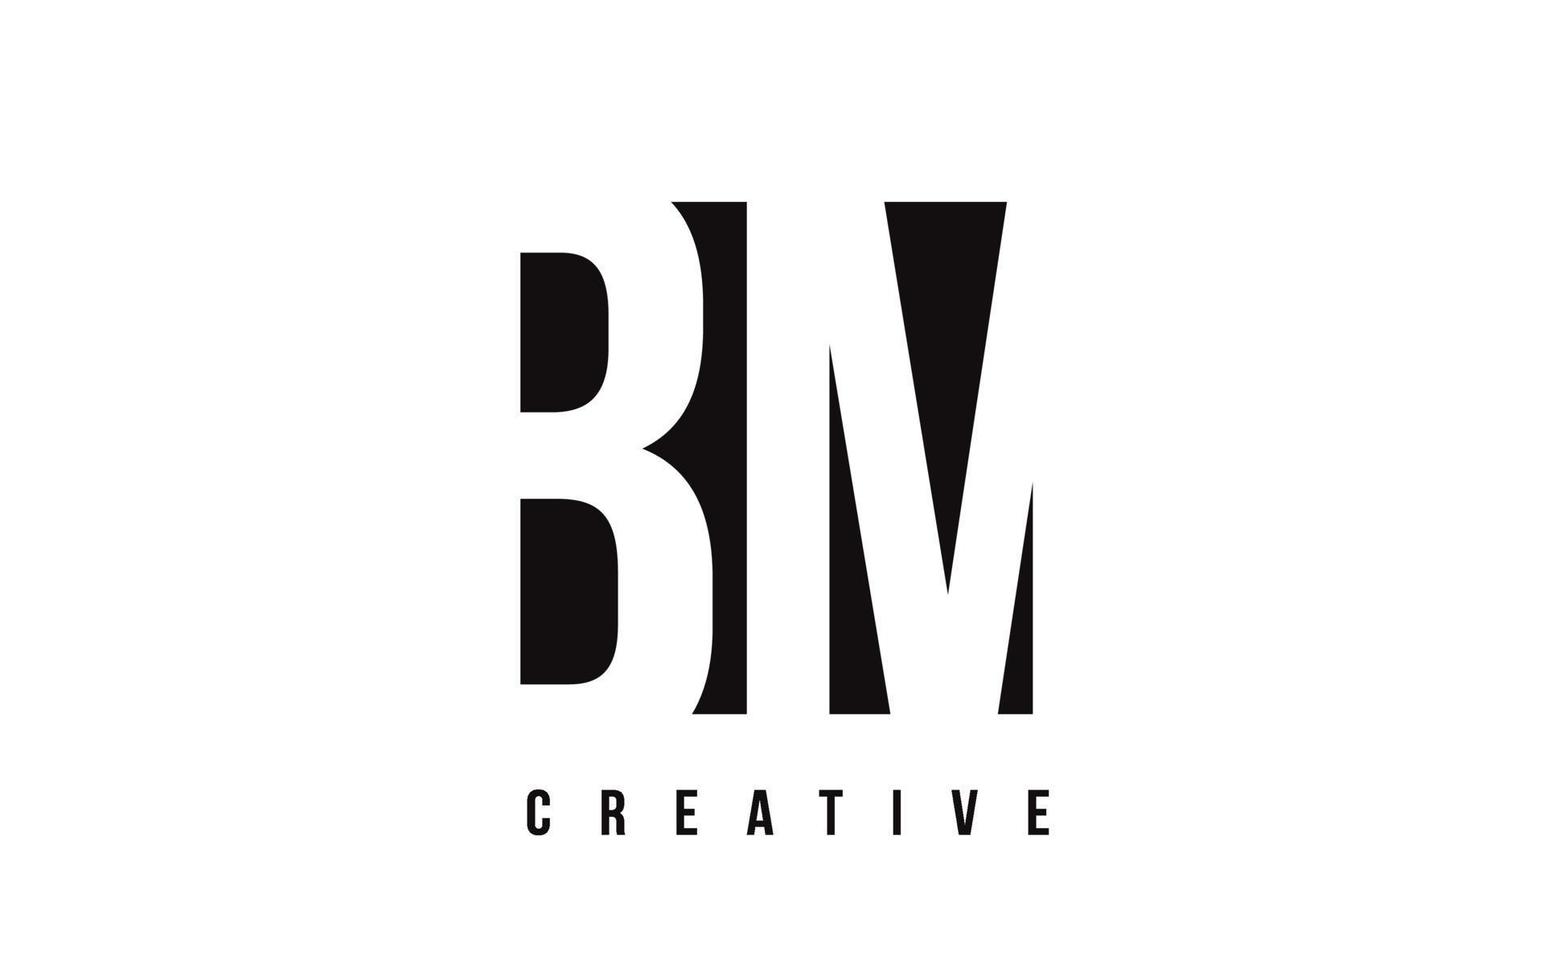 Diseño de logotipo bm bm letra blanca con cuadrado negro. vector